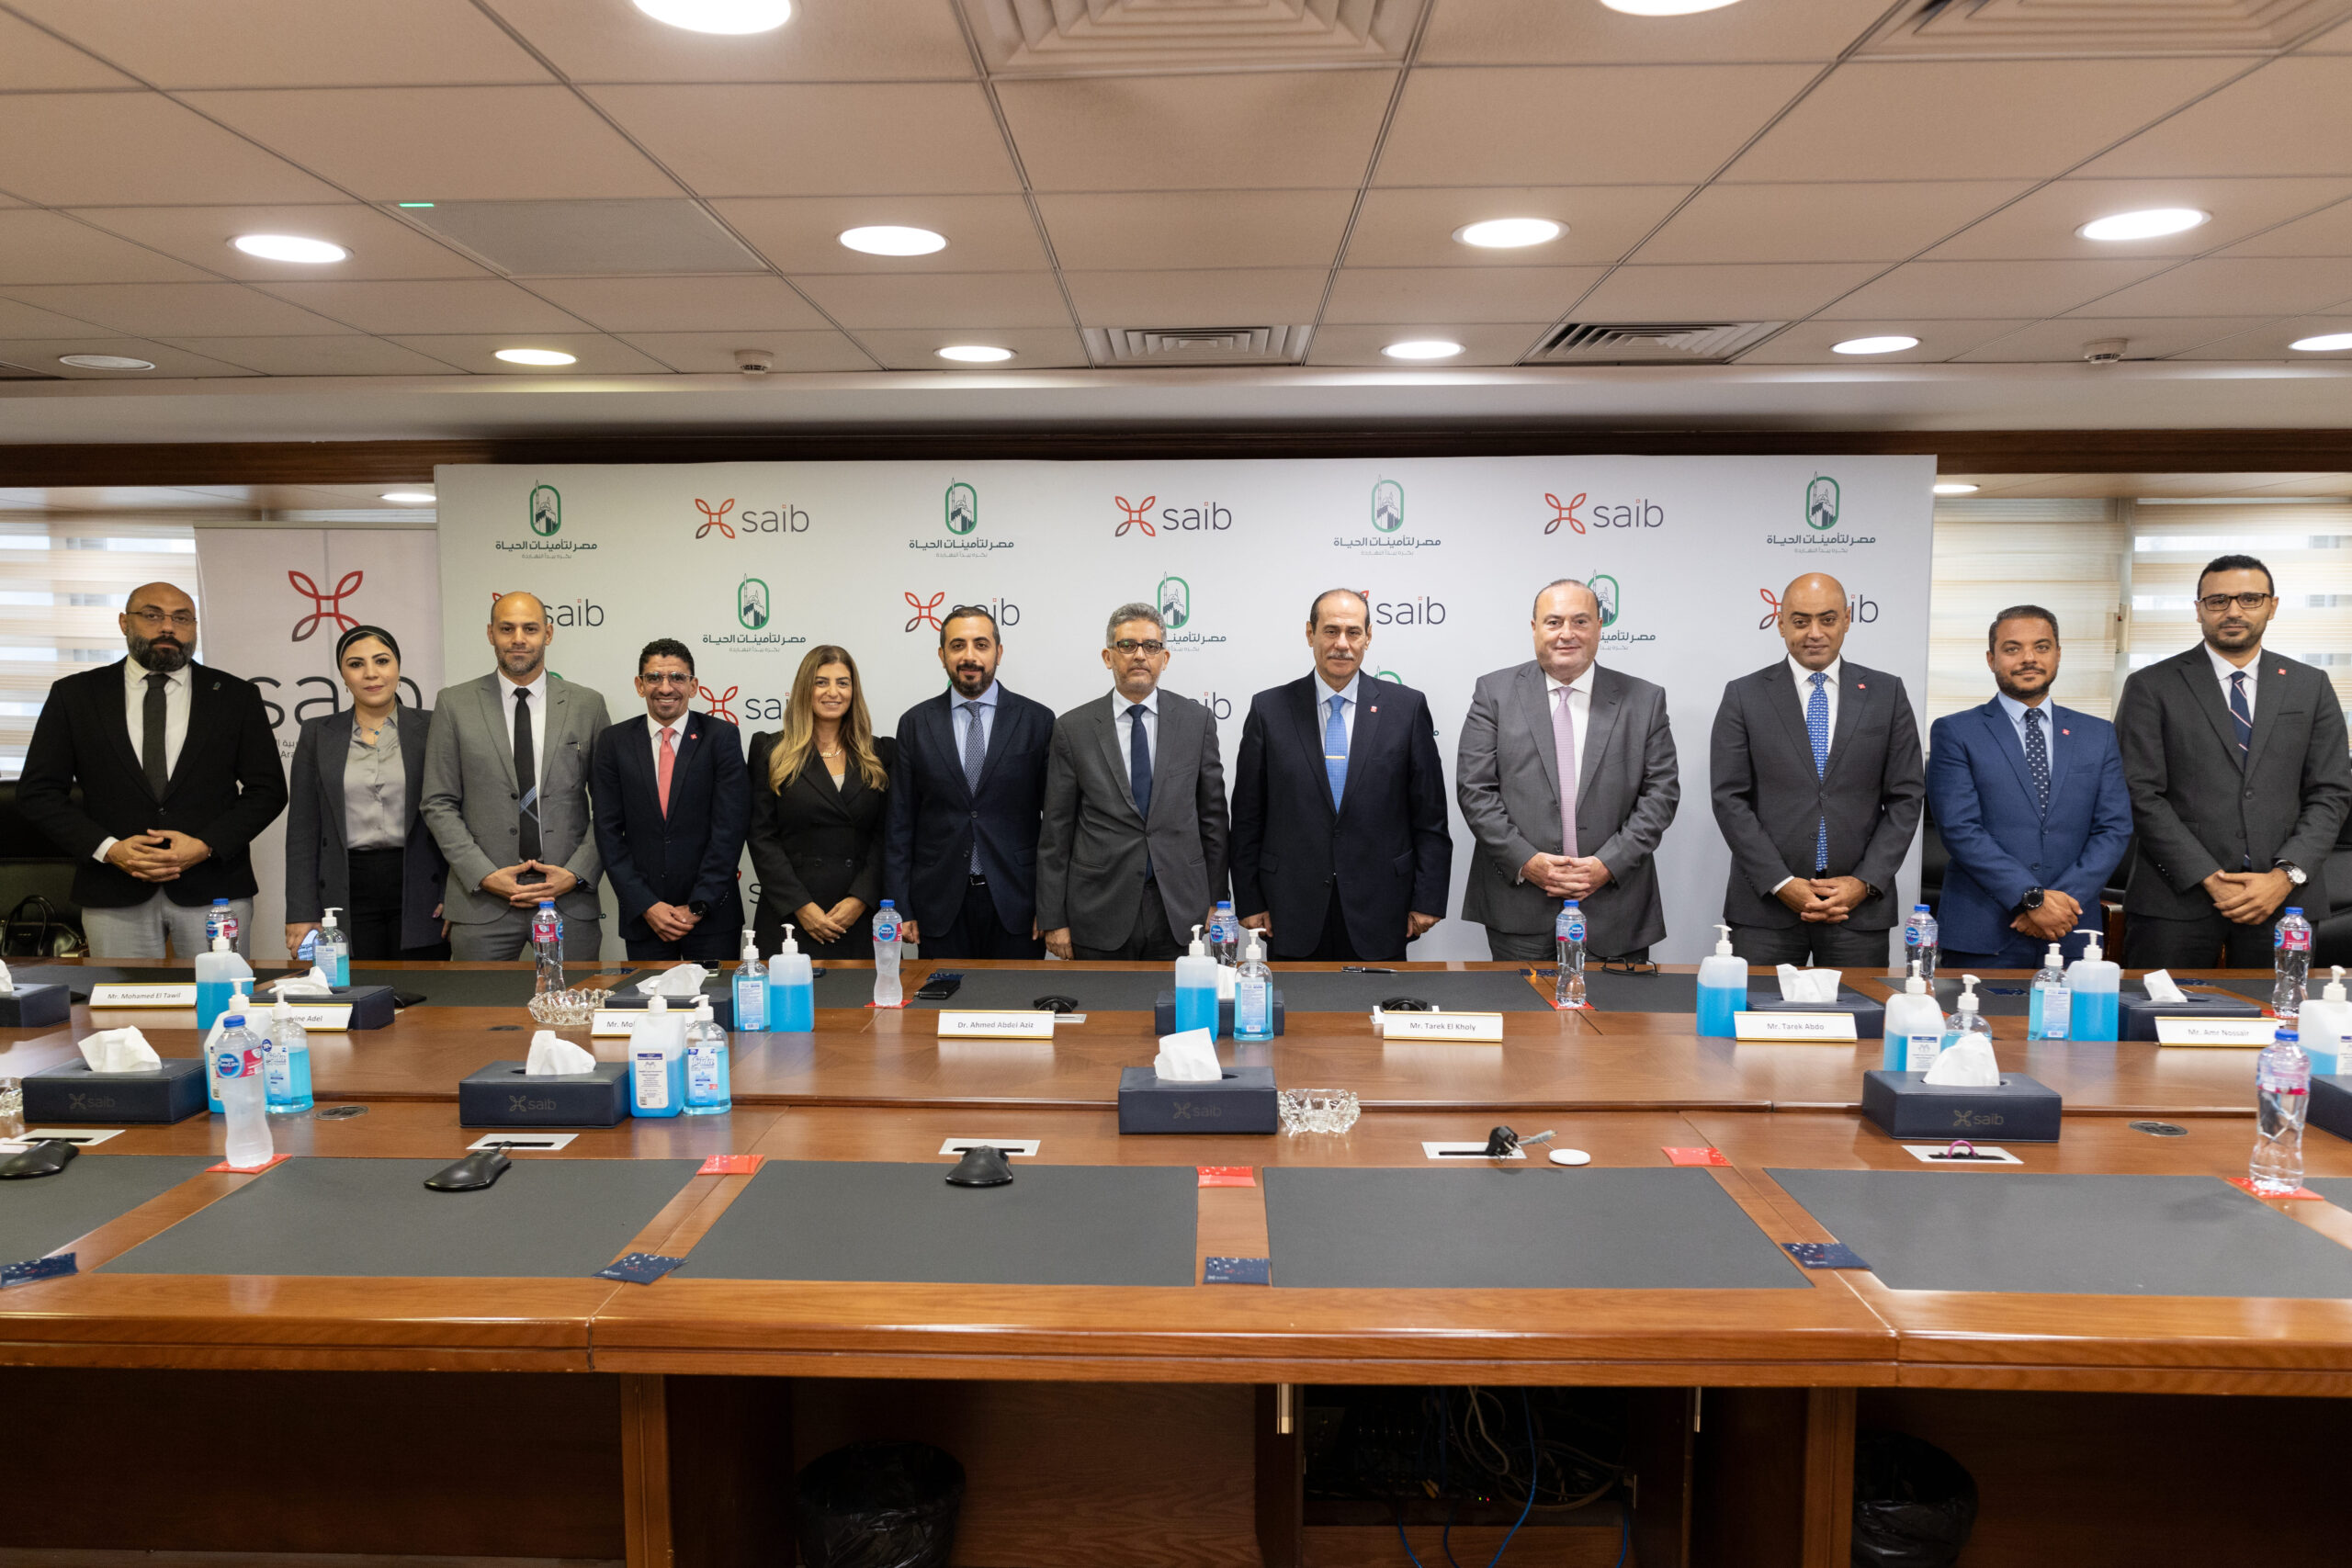 بنك saib يوقع اتفاقية مع مصر لتأمينات الحياة لتسويق منتجاتها من خلال فروع البنك